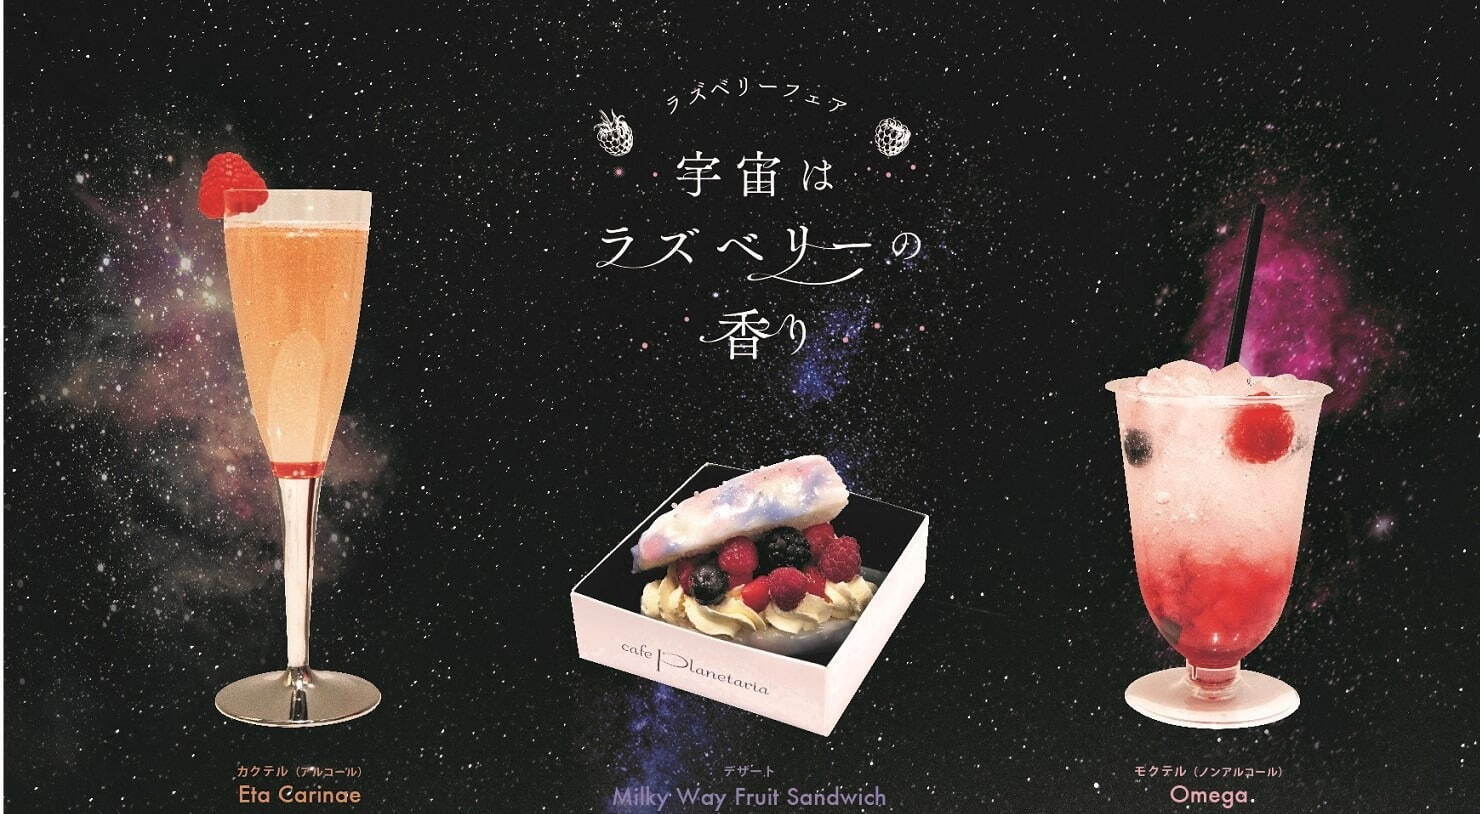 左から)「Eta Carina」(カクテル)880円(税込) 
「Milky Way Fruit Sandwich」600円(税込)、「Omega」(ノンアルコールカクテル)770円(税込)